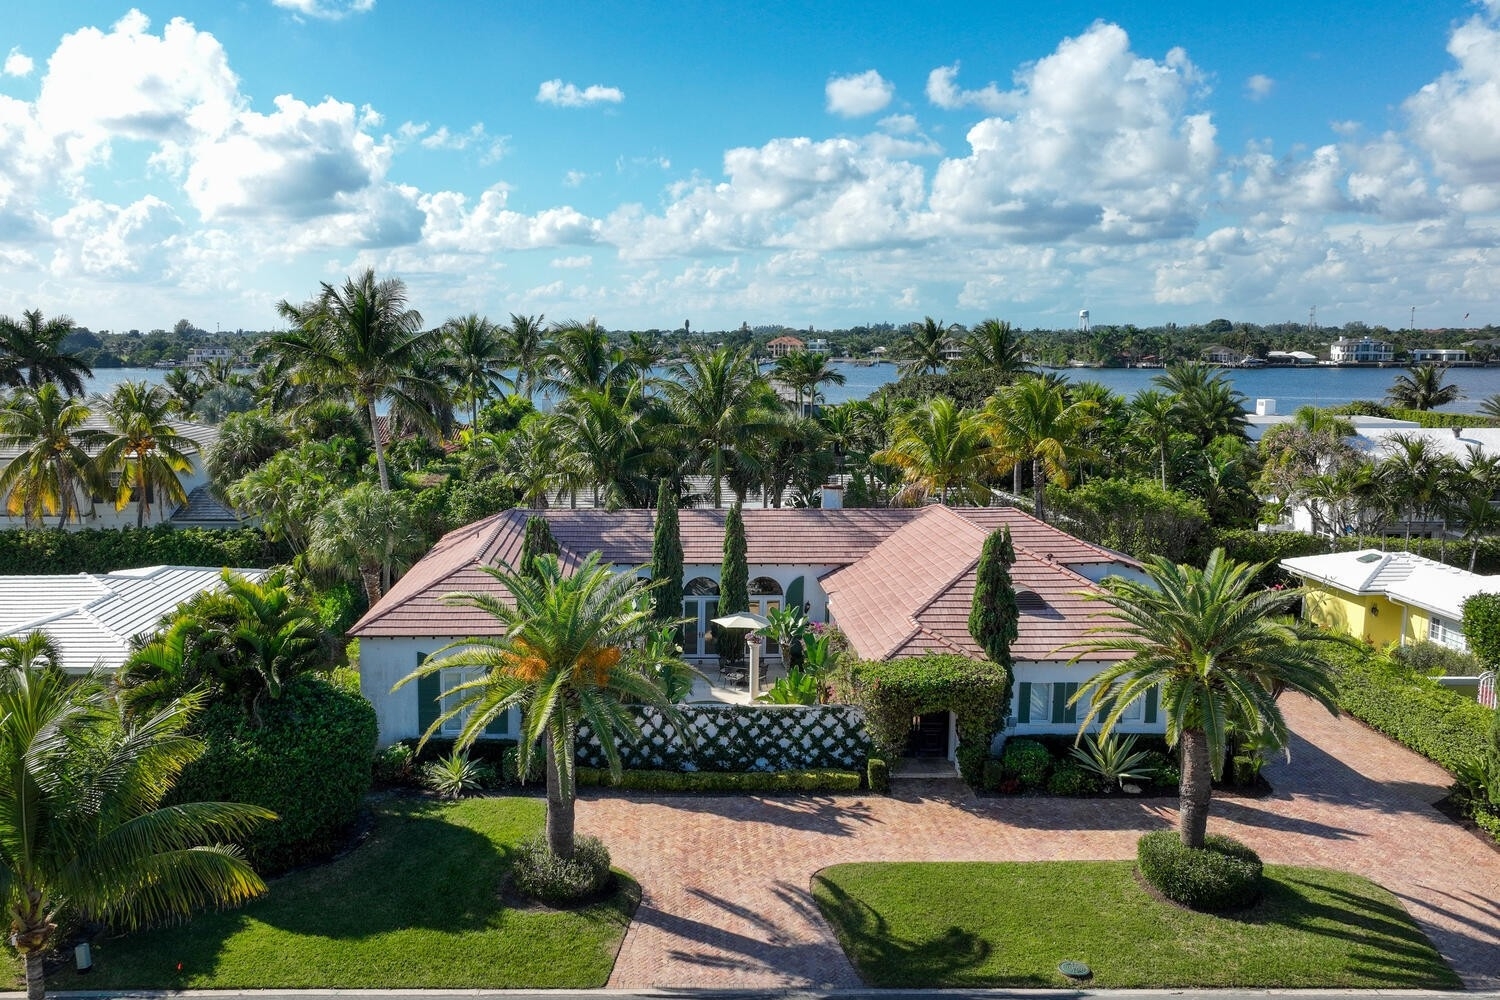 Single Family Home at Ibis Isle, Palm Beach, FL 33480